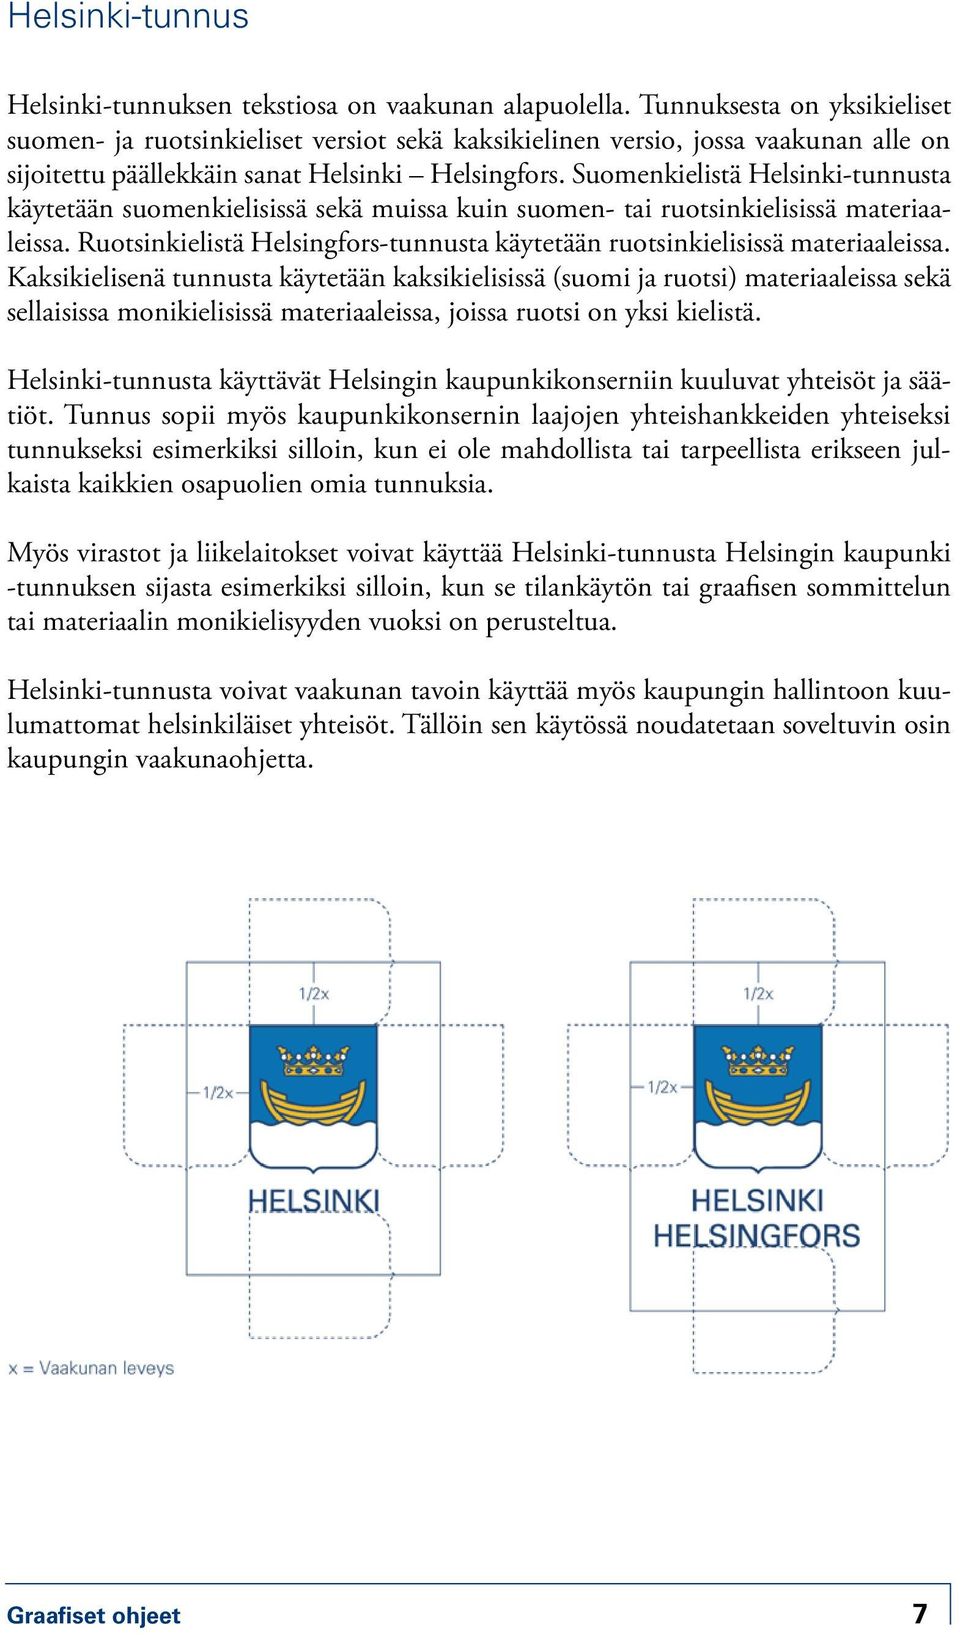 Suomenkielistä Helsinki-tunnusta käytetään suomenkielisissä sekä muissa kuin suomen- tai ruotsinkielisissä materiaaleissa.